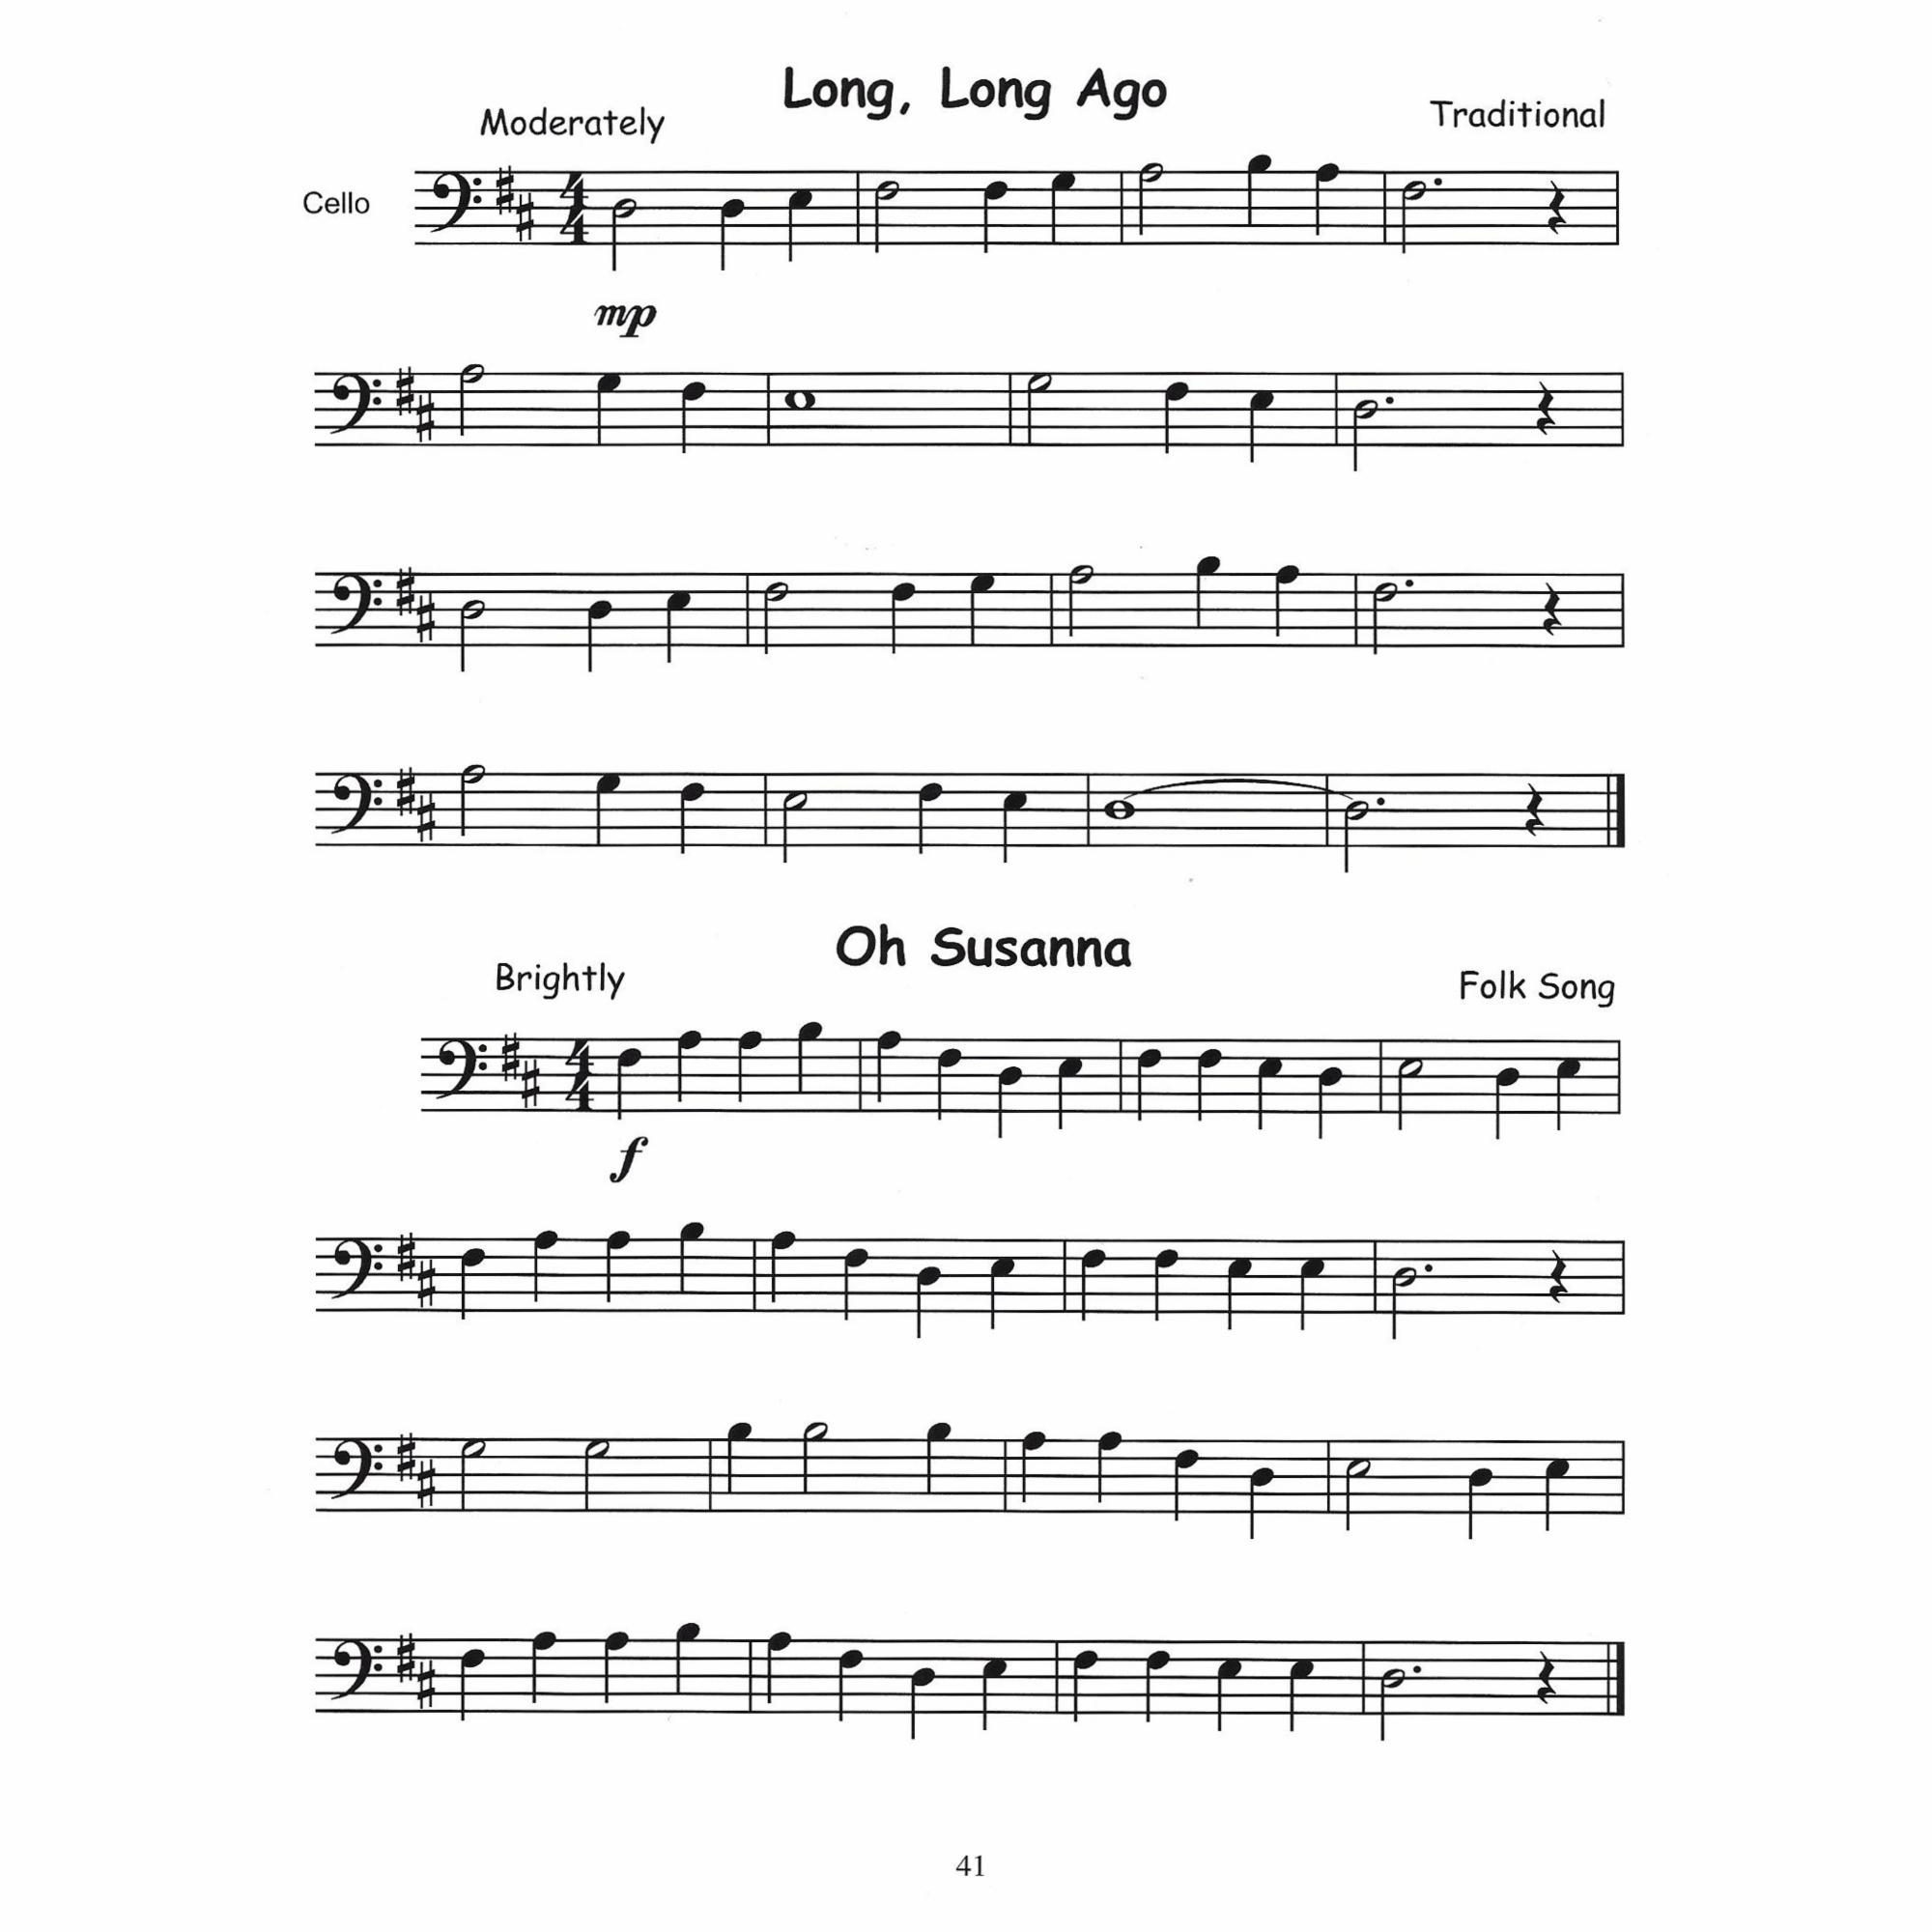 Sample: Cello (Pg. 41)